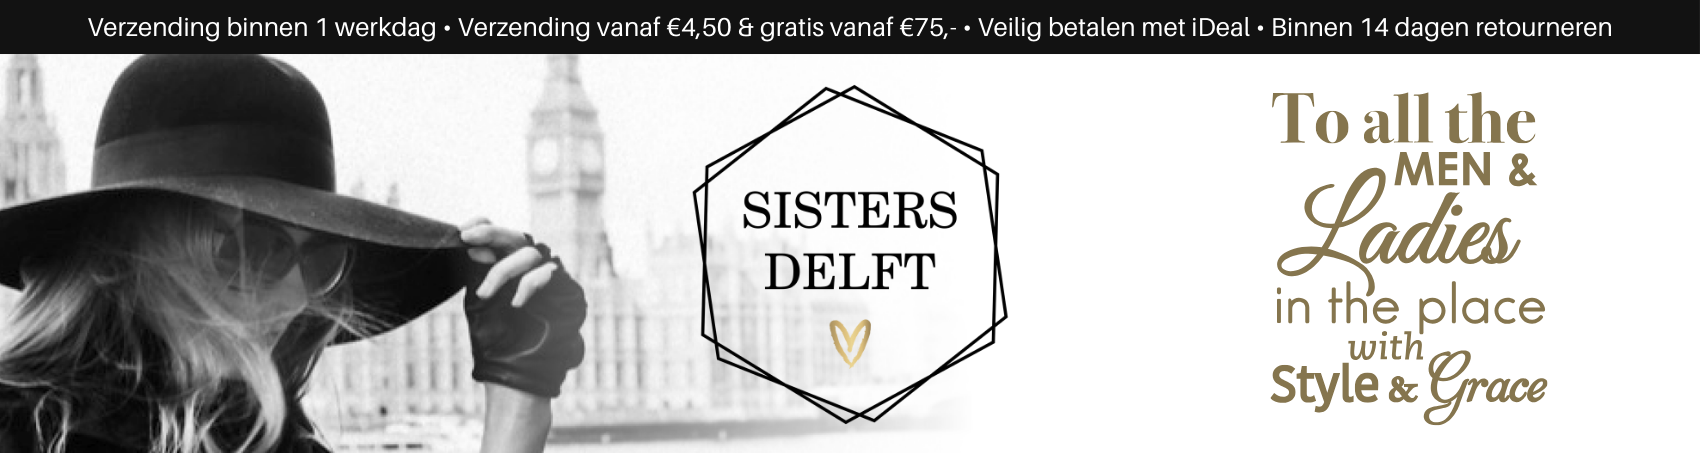 sisters delft banner website 2 75  